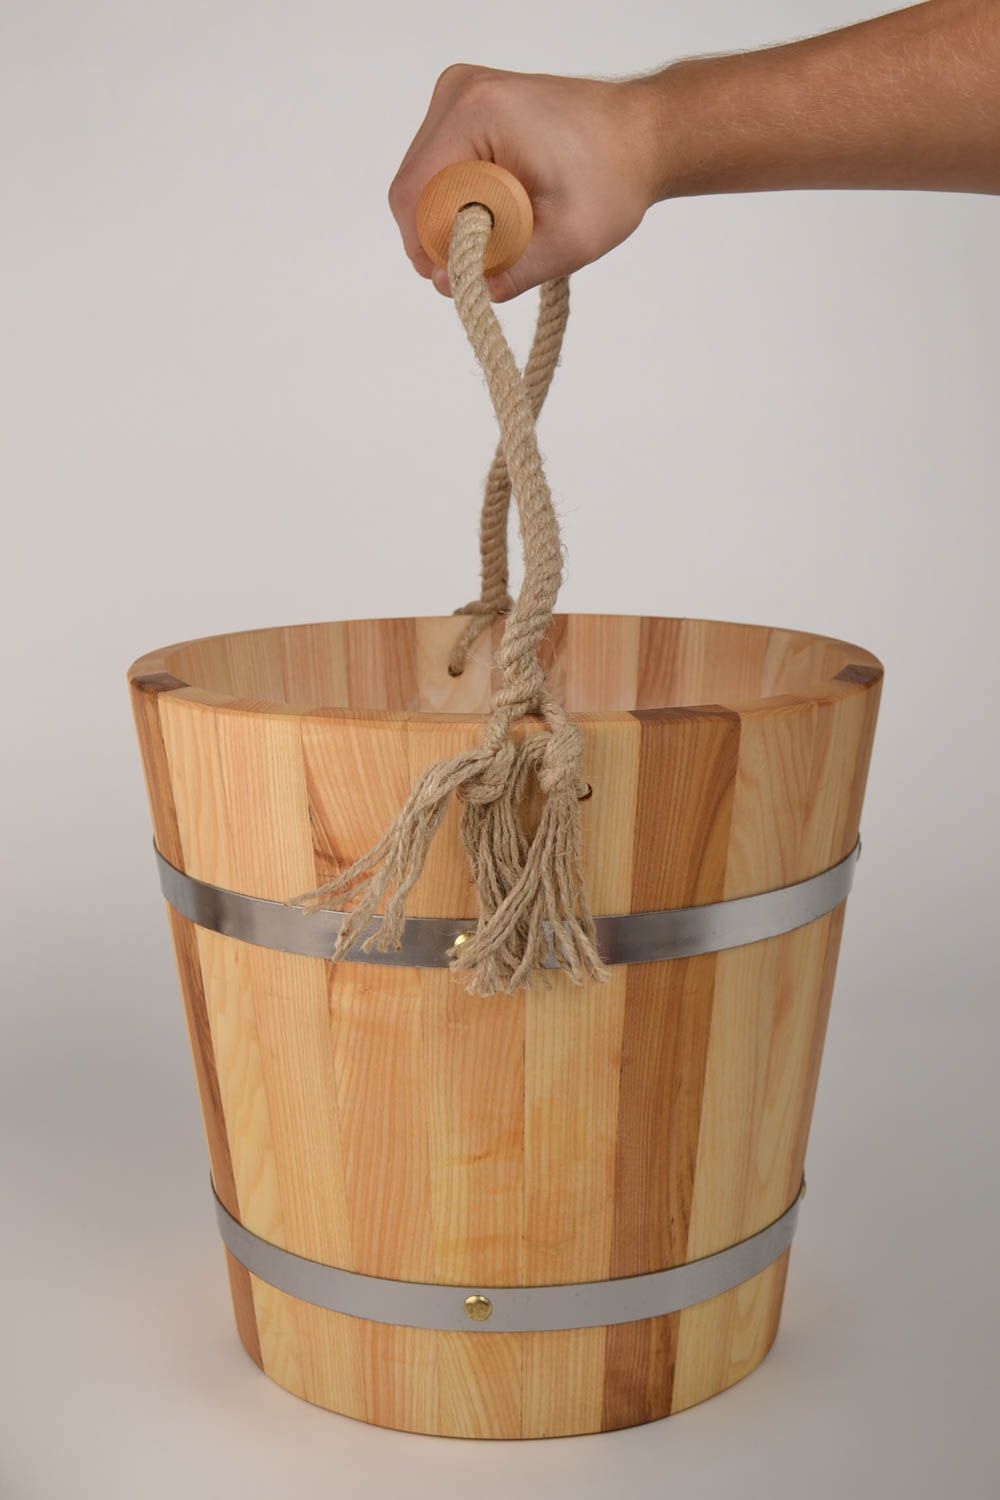 Handmade bucket made of wood sauna accessories sauna bucket present for men photo 6